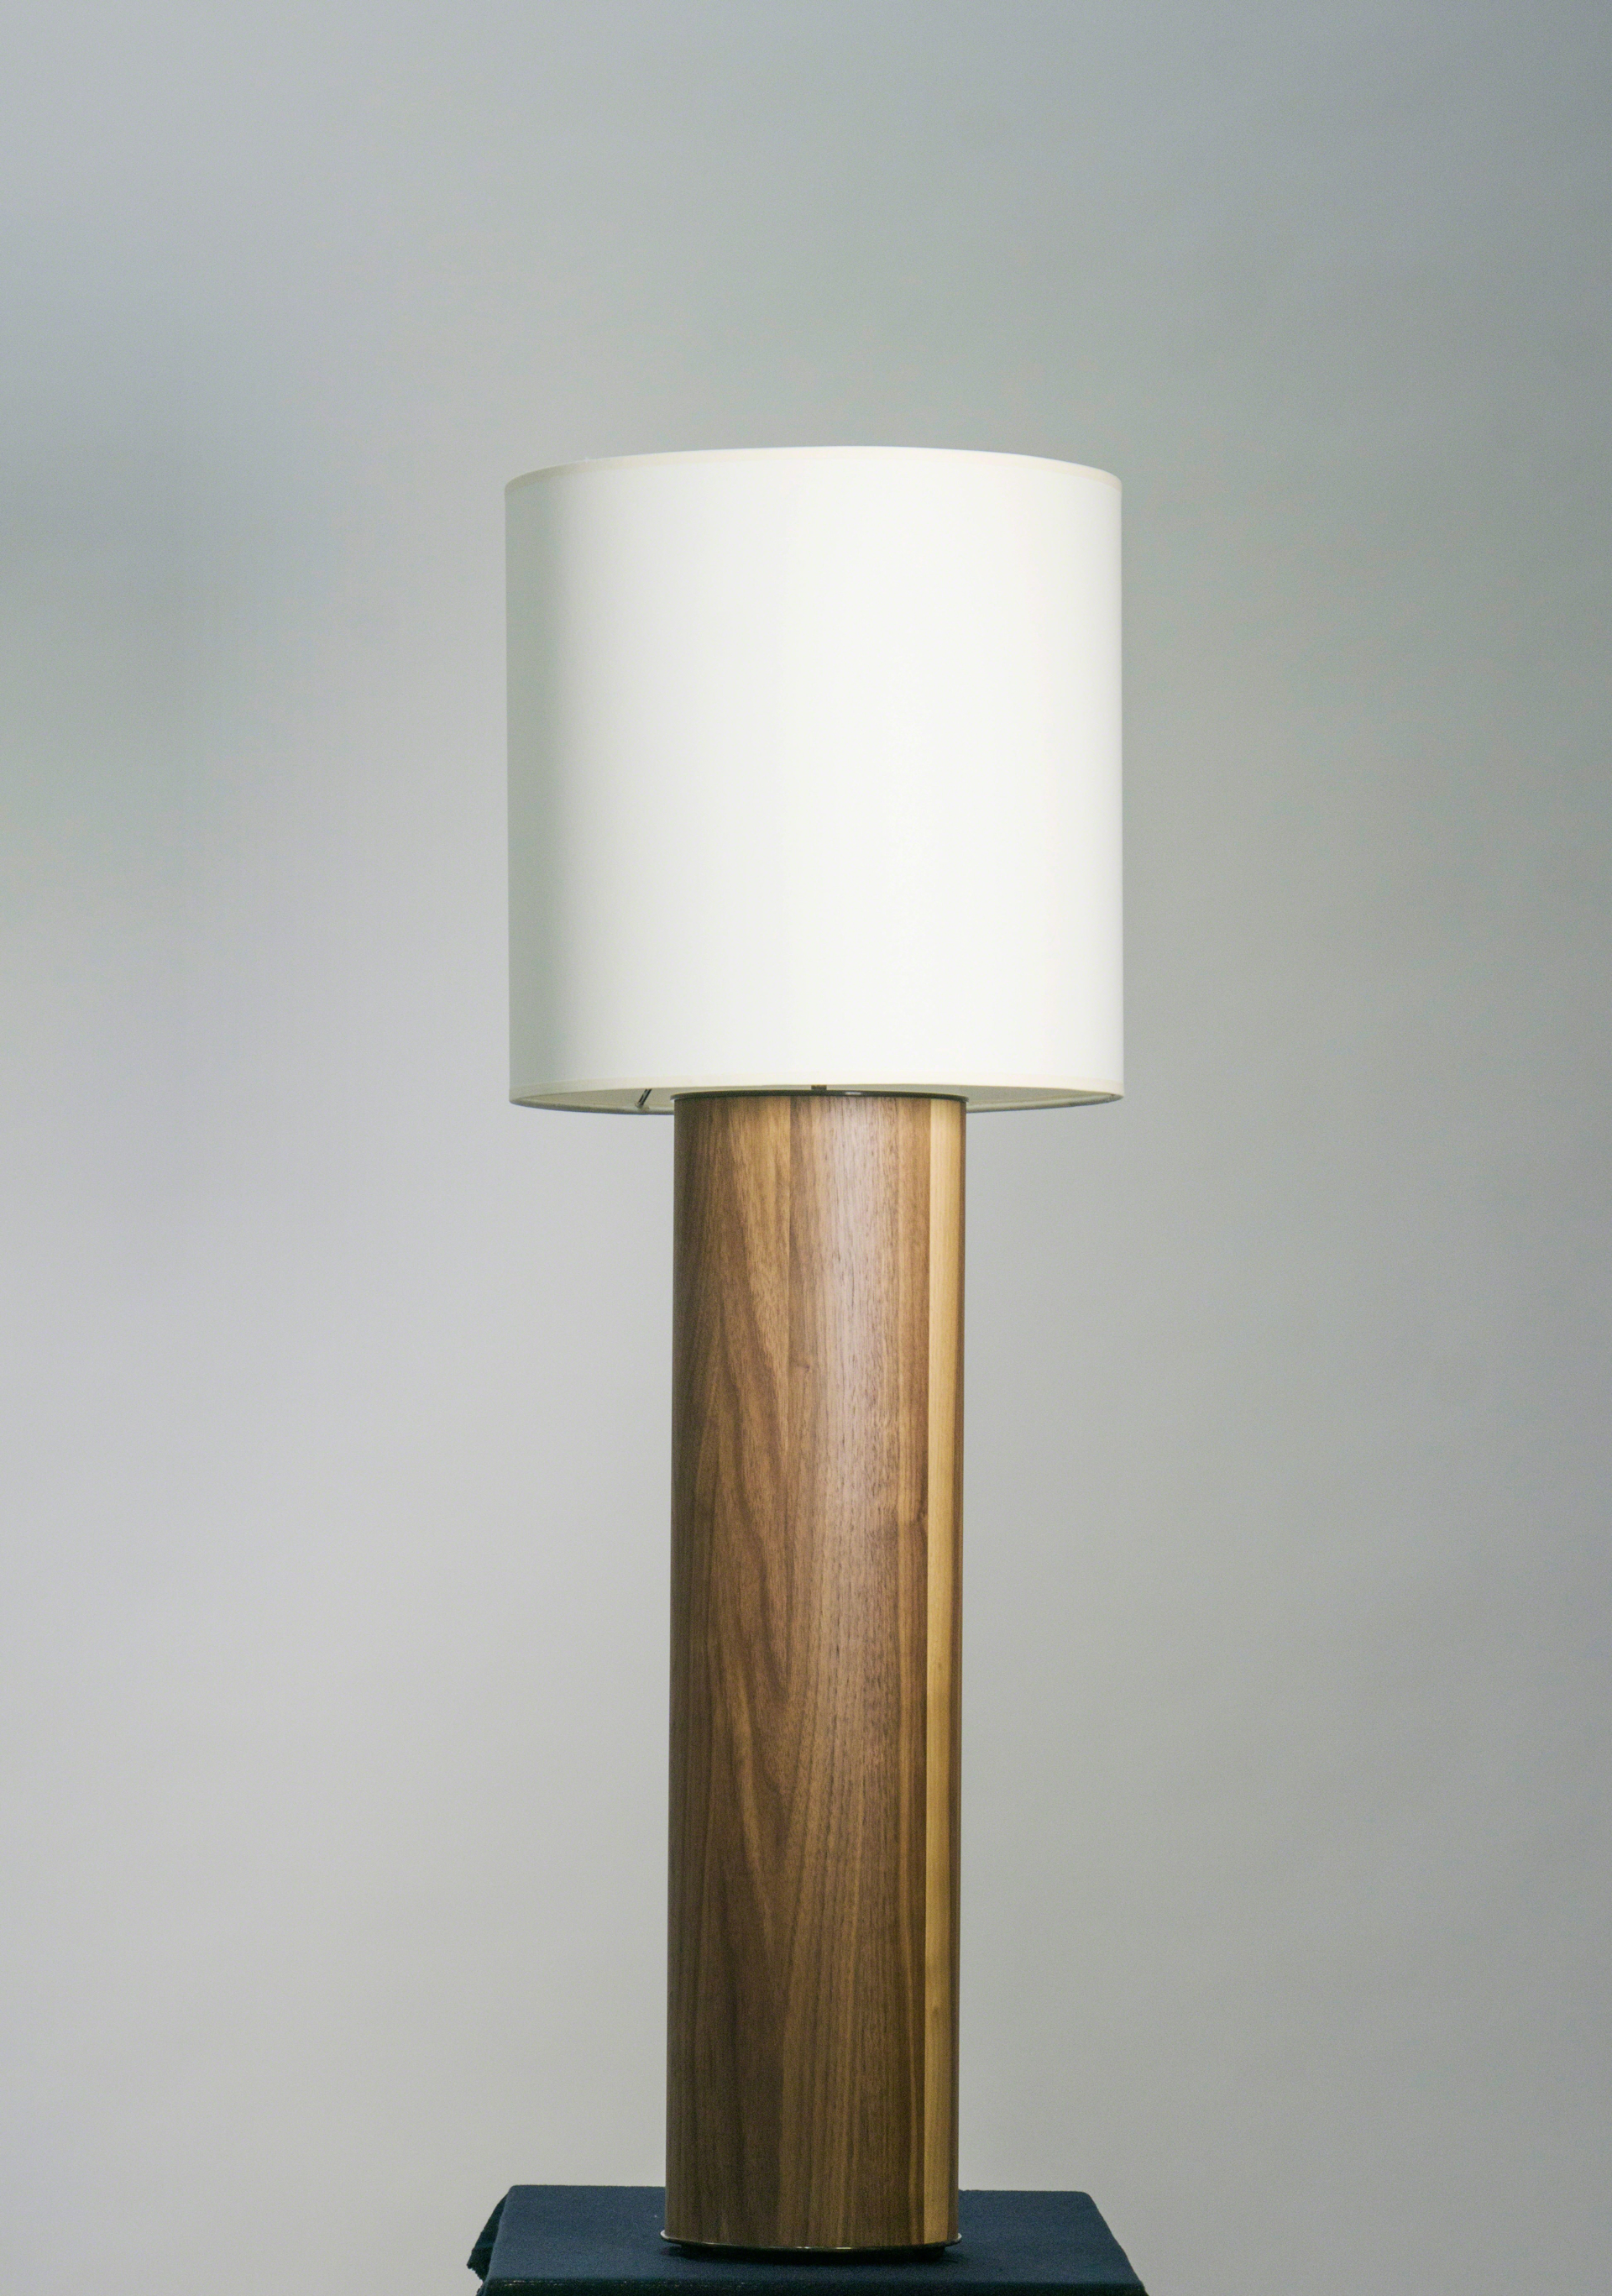 Table lamp by Tinatin Kilaberidze